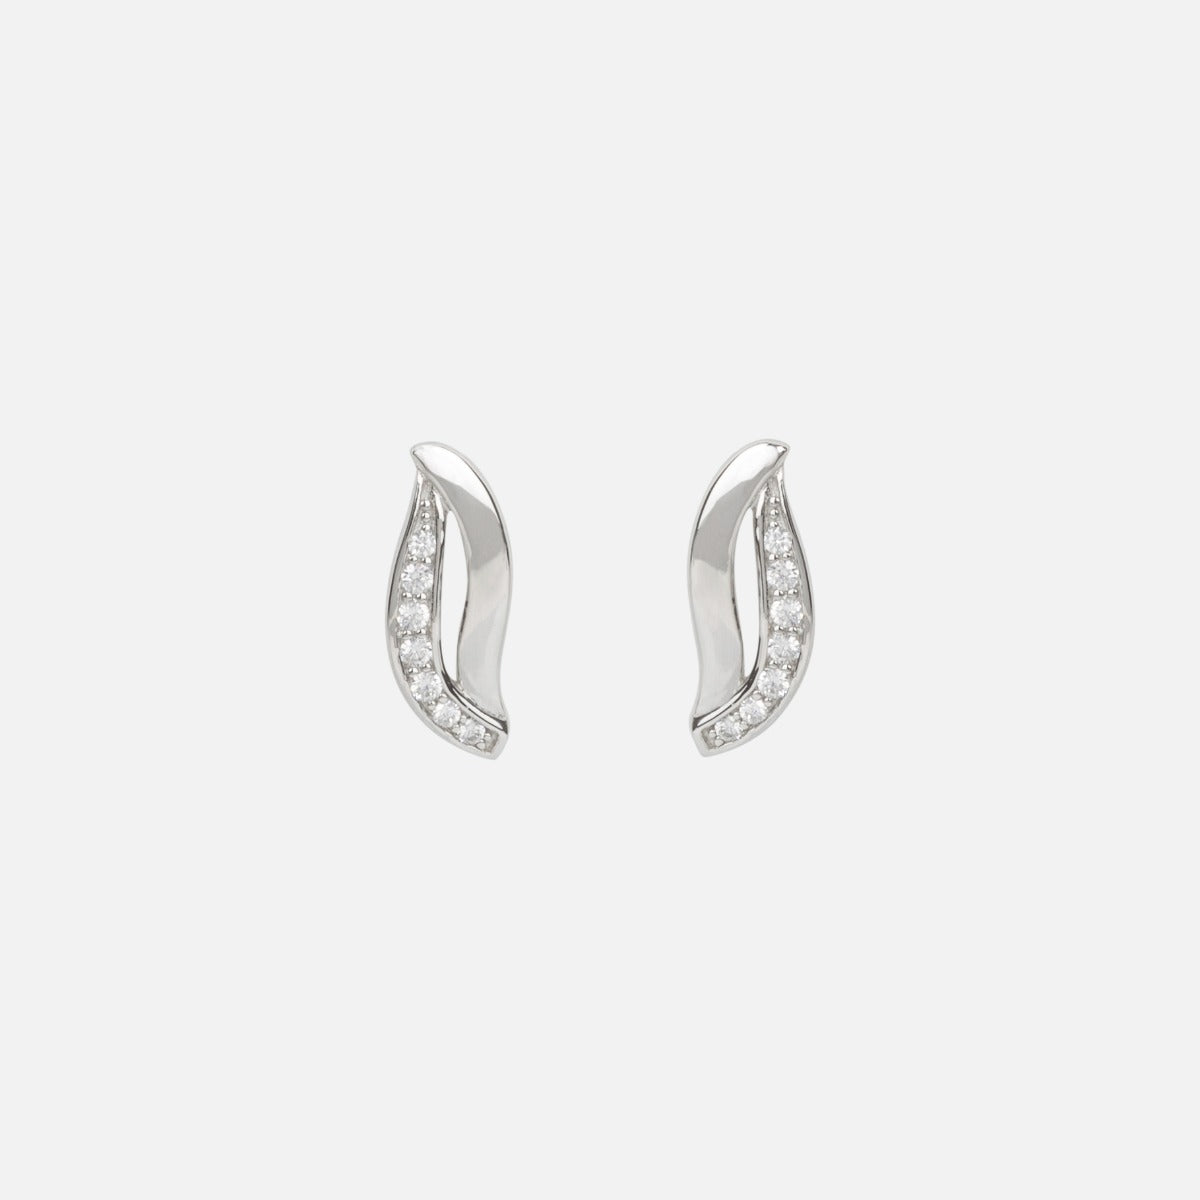 Sterling silver stud earrings in a ‘’s’’ shape